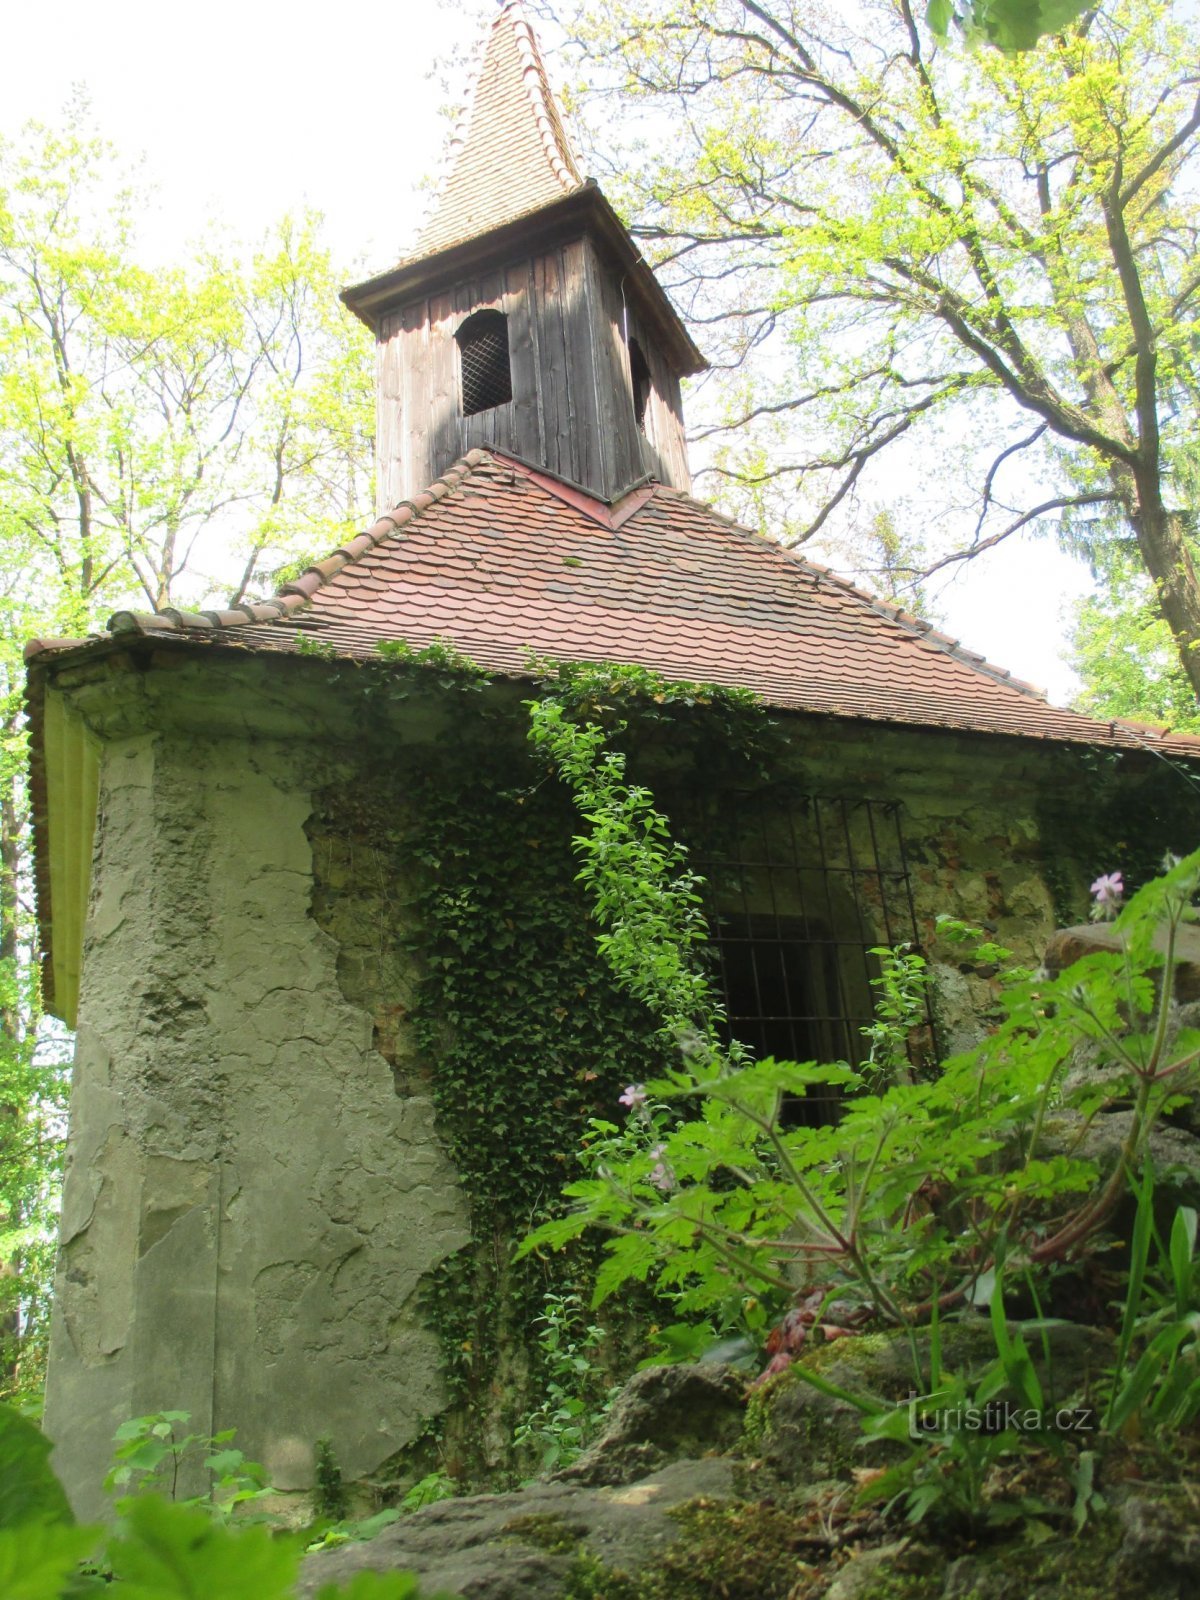 Holy Trinity Chapel (Zdislavina Chapel)